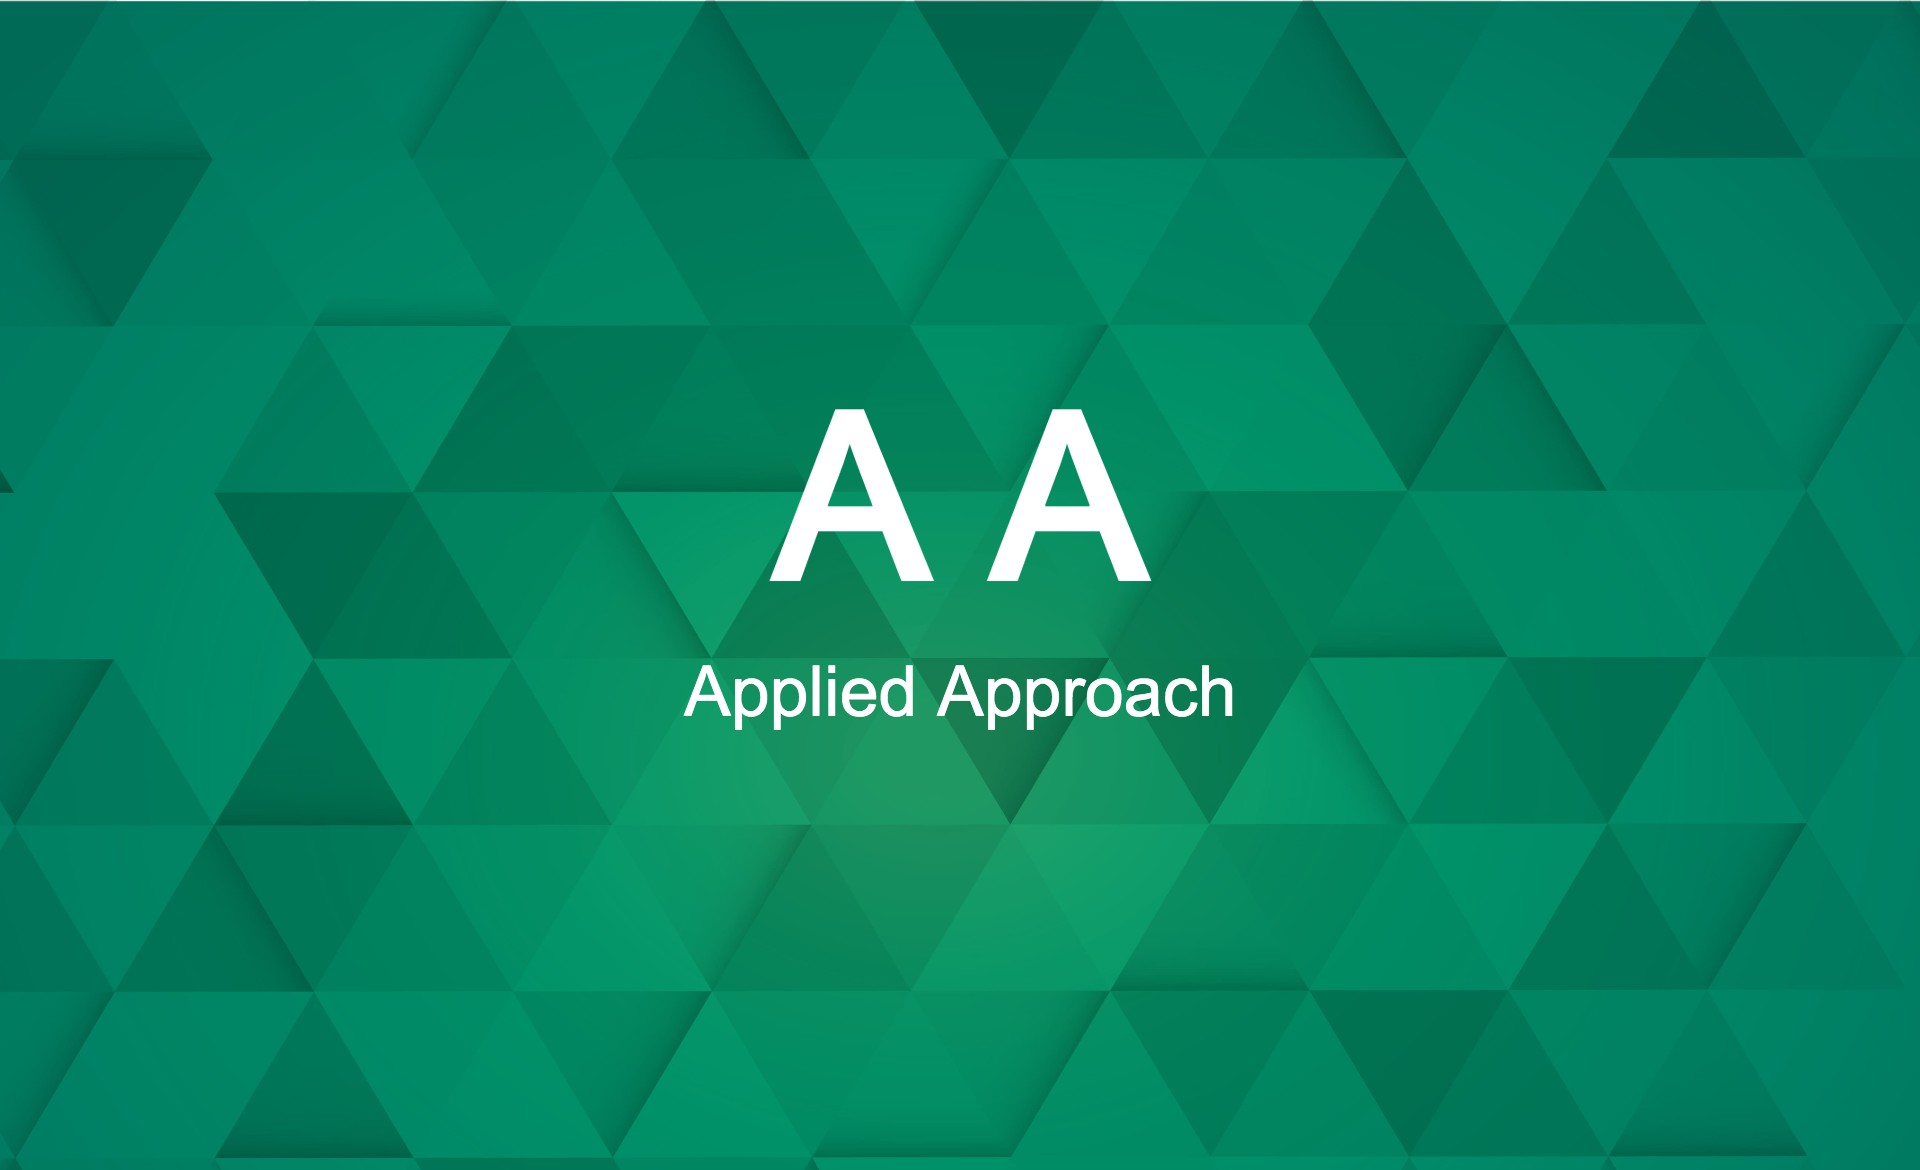 Applied Approach (AA)